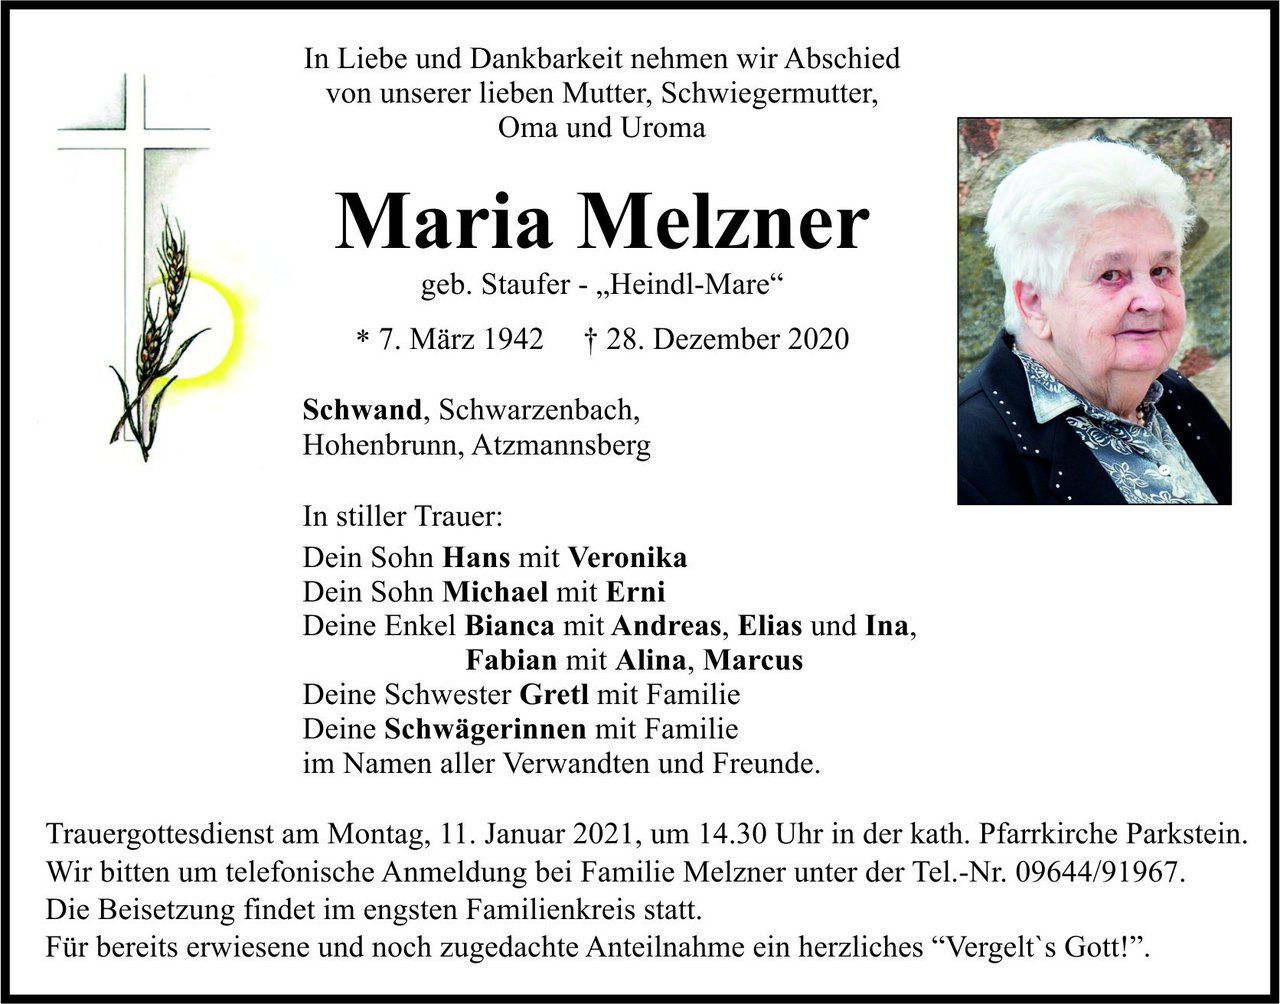 Traueranzeige Maria Melzner, Schwand